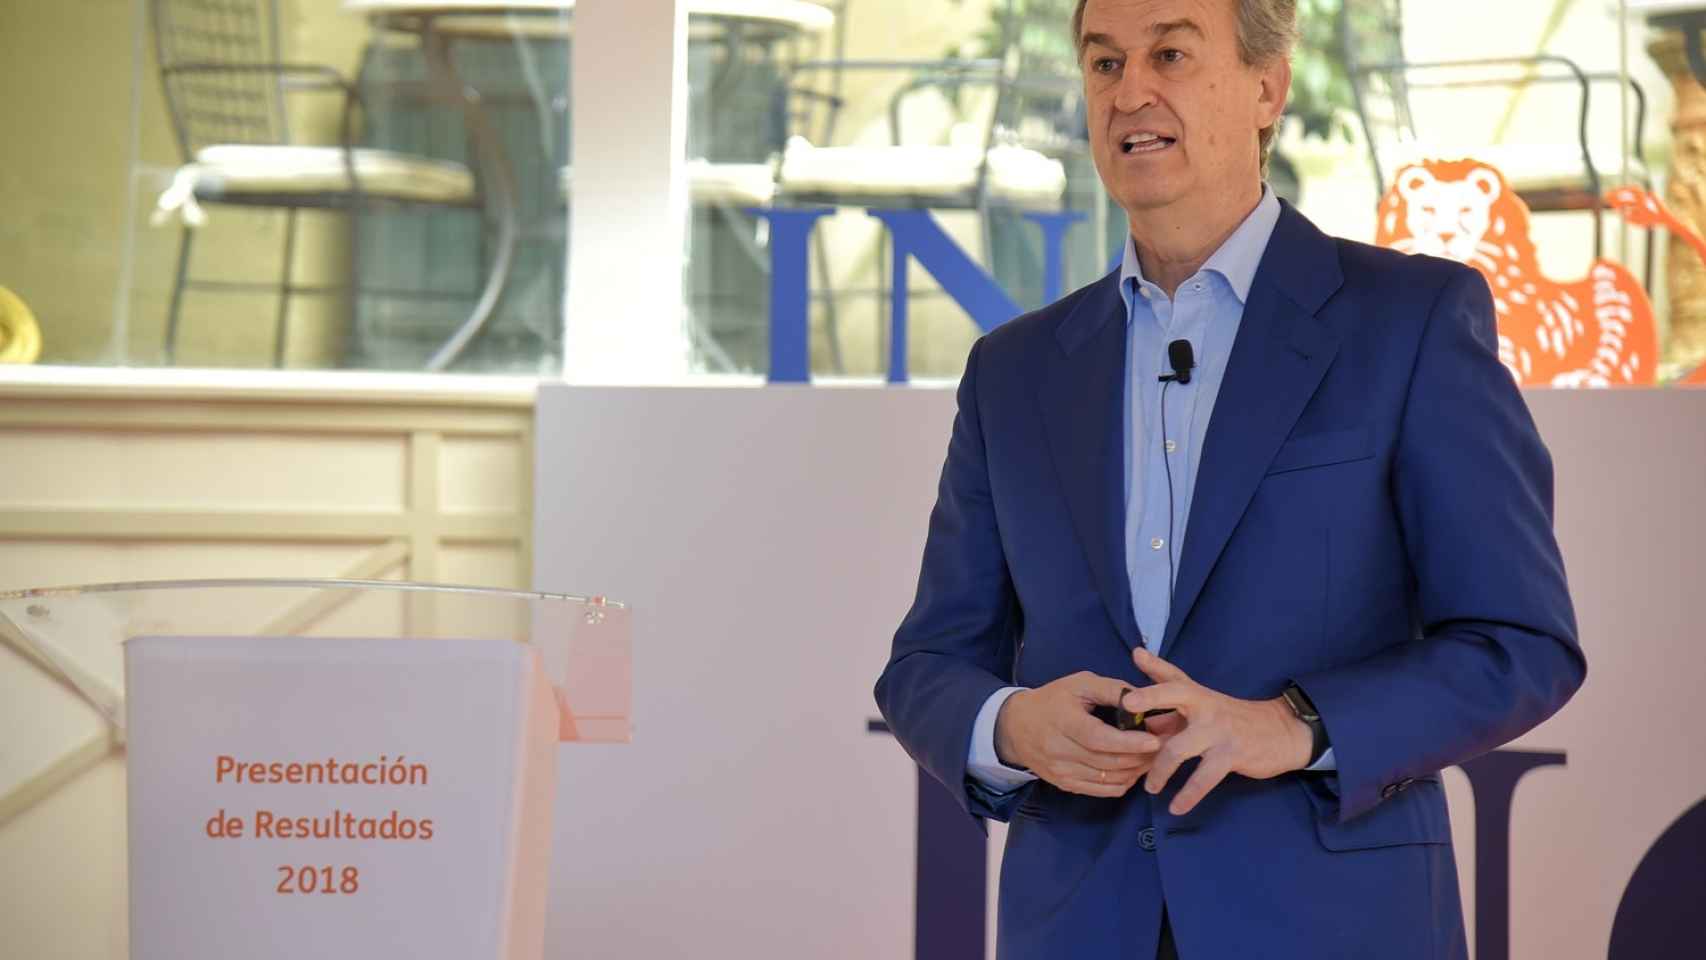 César González-Bueno, CEO de ING en España durante la presentación de resultados.